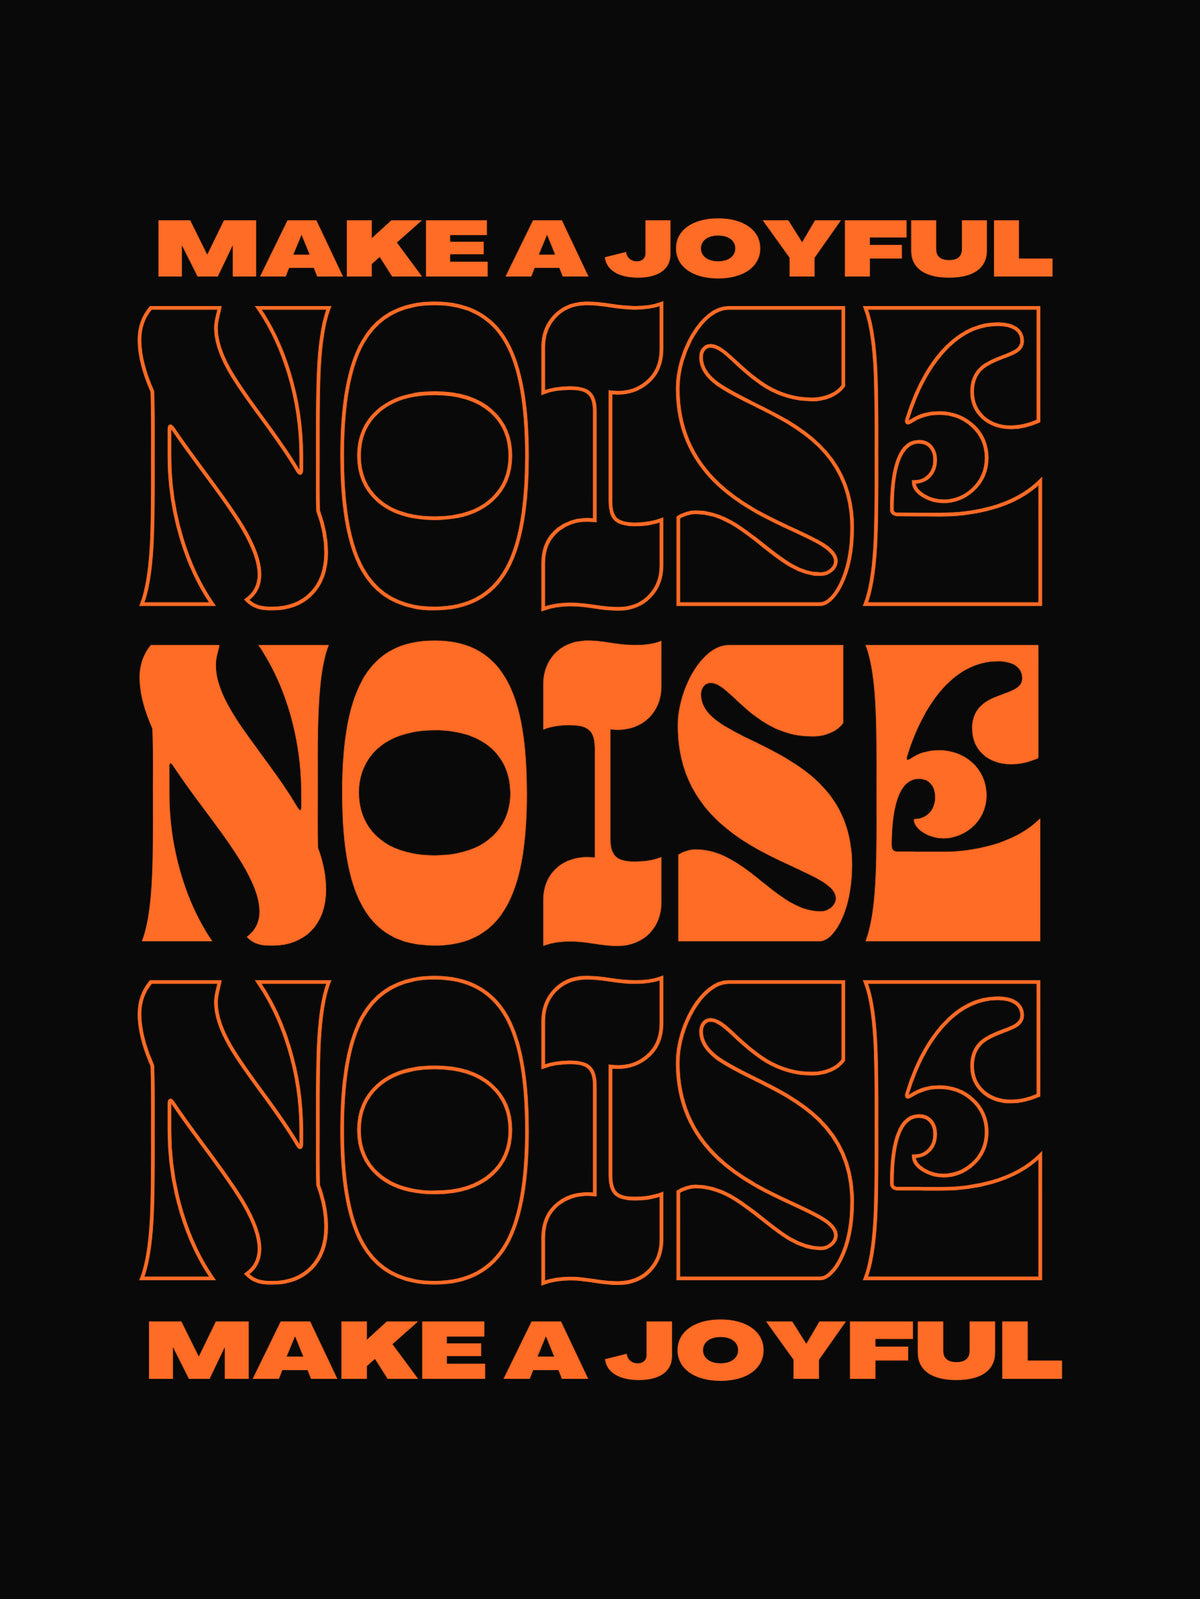 Joyful Noise by C.A.Star